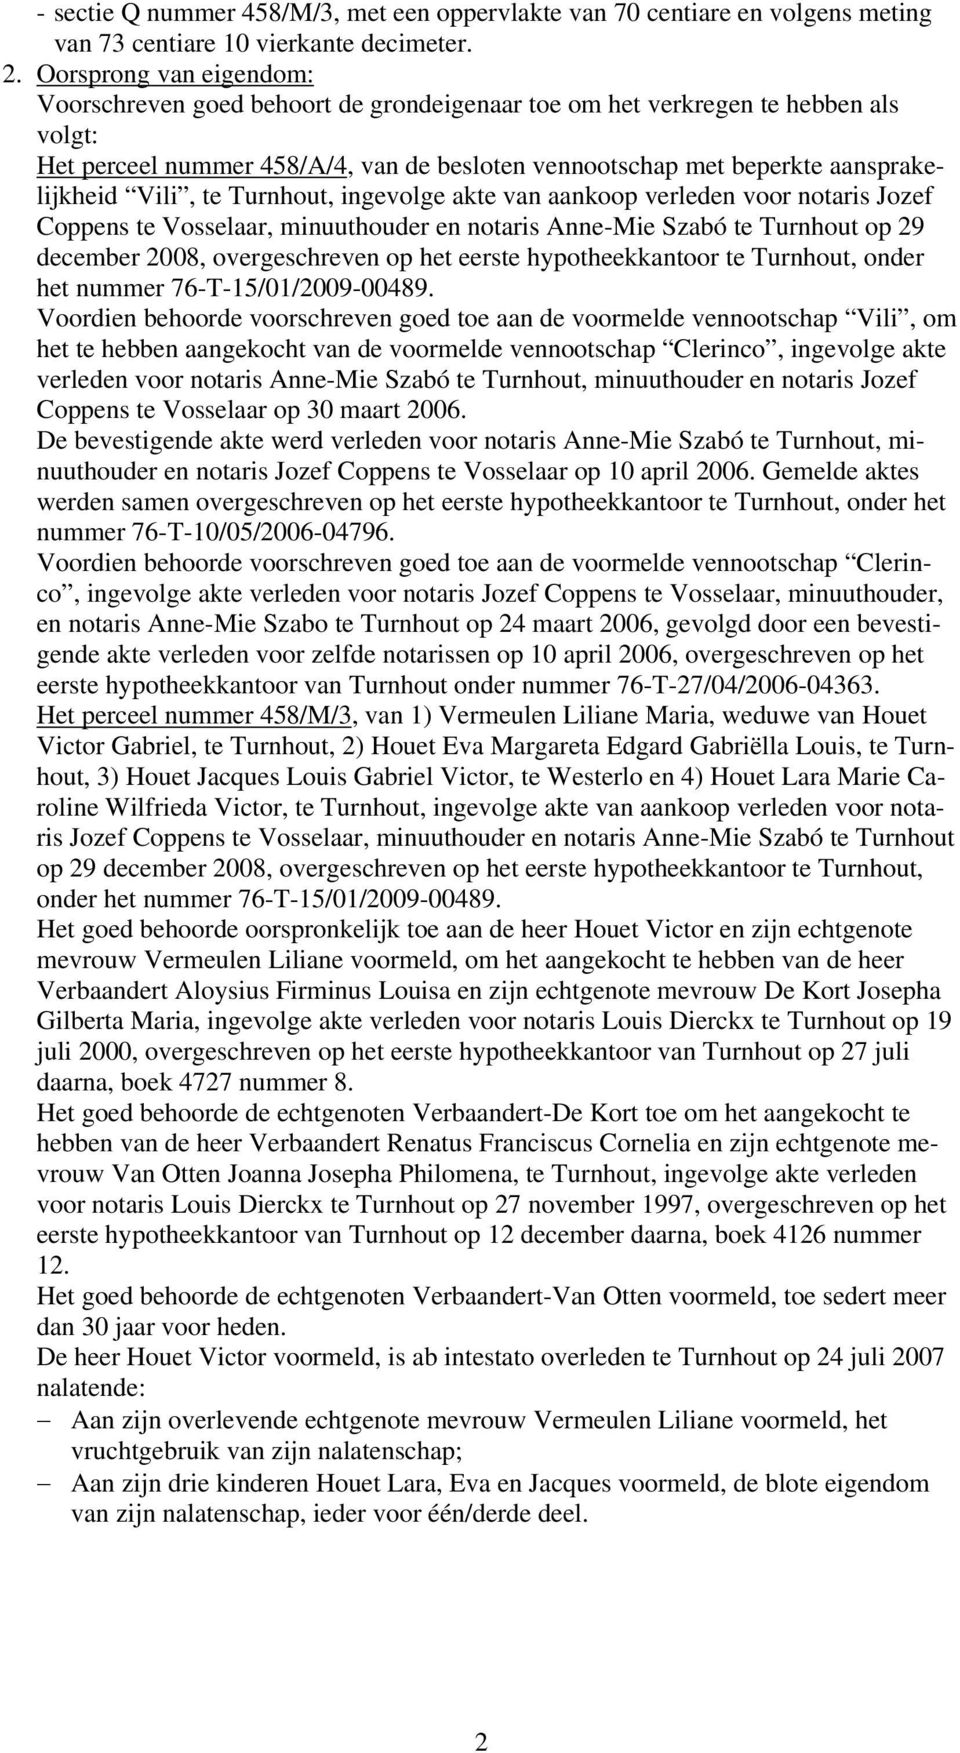 Vili, te Turnhout, ingevolge akte van aankoop verleden voor notaris Jozef Coppens te Vosselaar, minuuthouder en notaris Anne-Mie Szabó te Turnhout op 29 december 2008, overgeschreven op het eerste